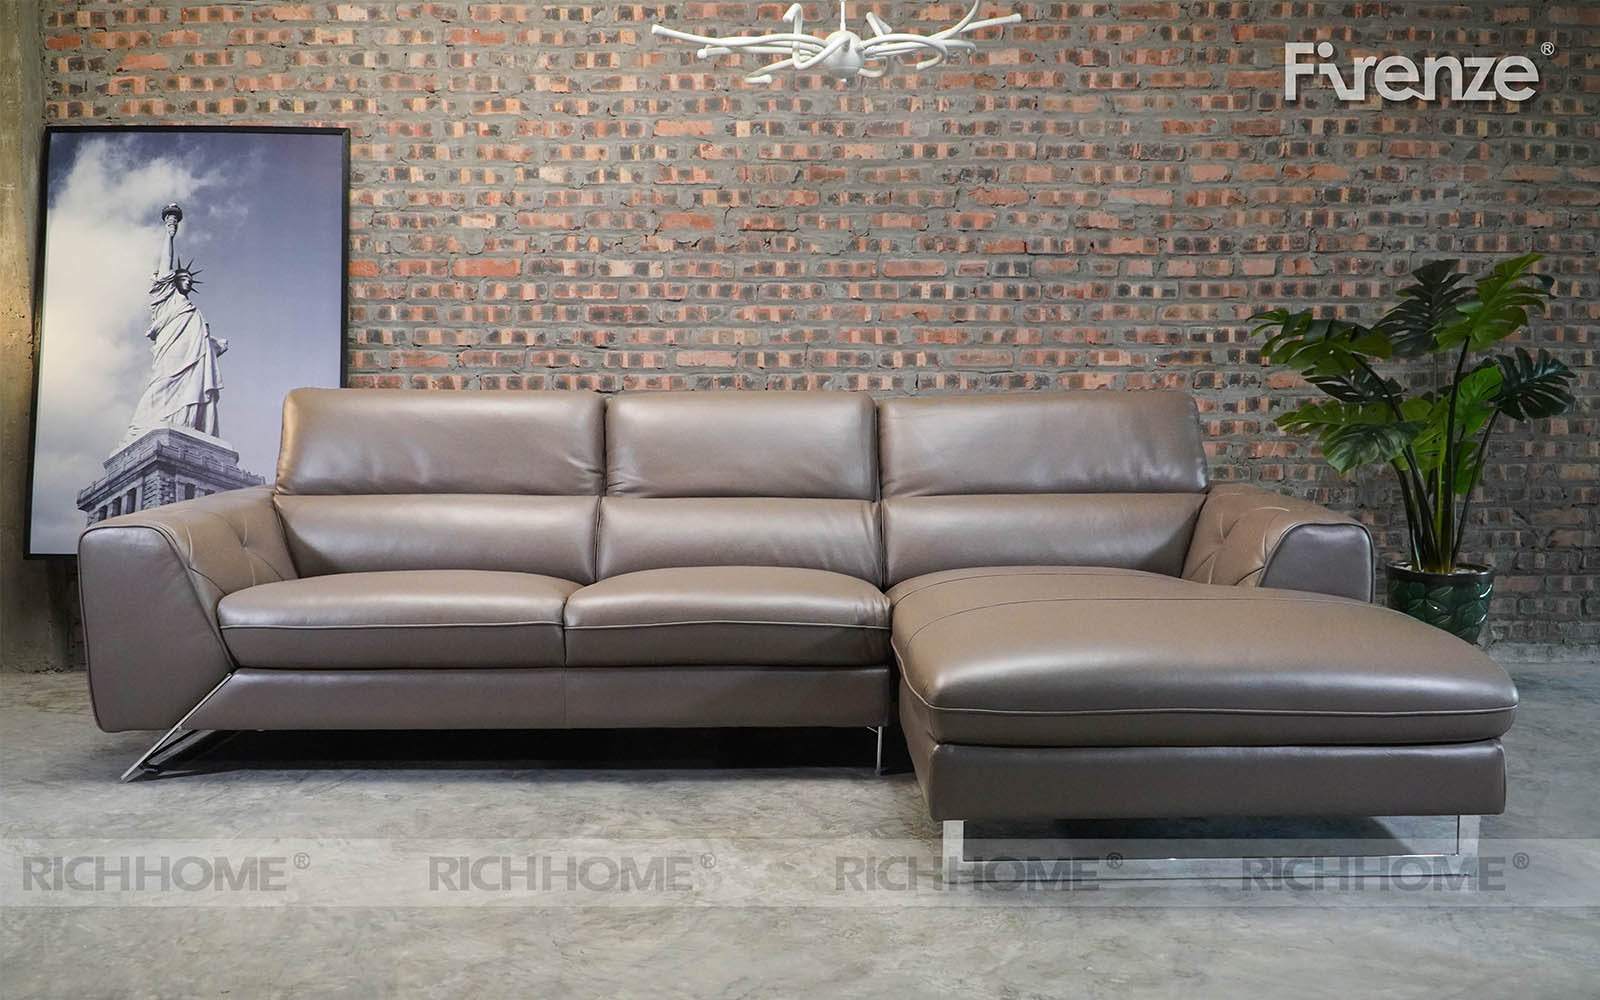 Ghế sofa góc - sự lựa chọn hoàn hảo cho gia đình hiện đại - Ảnh 2